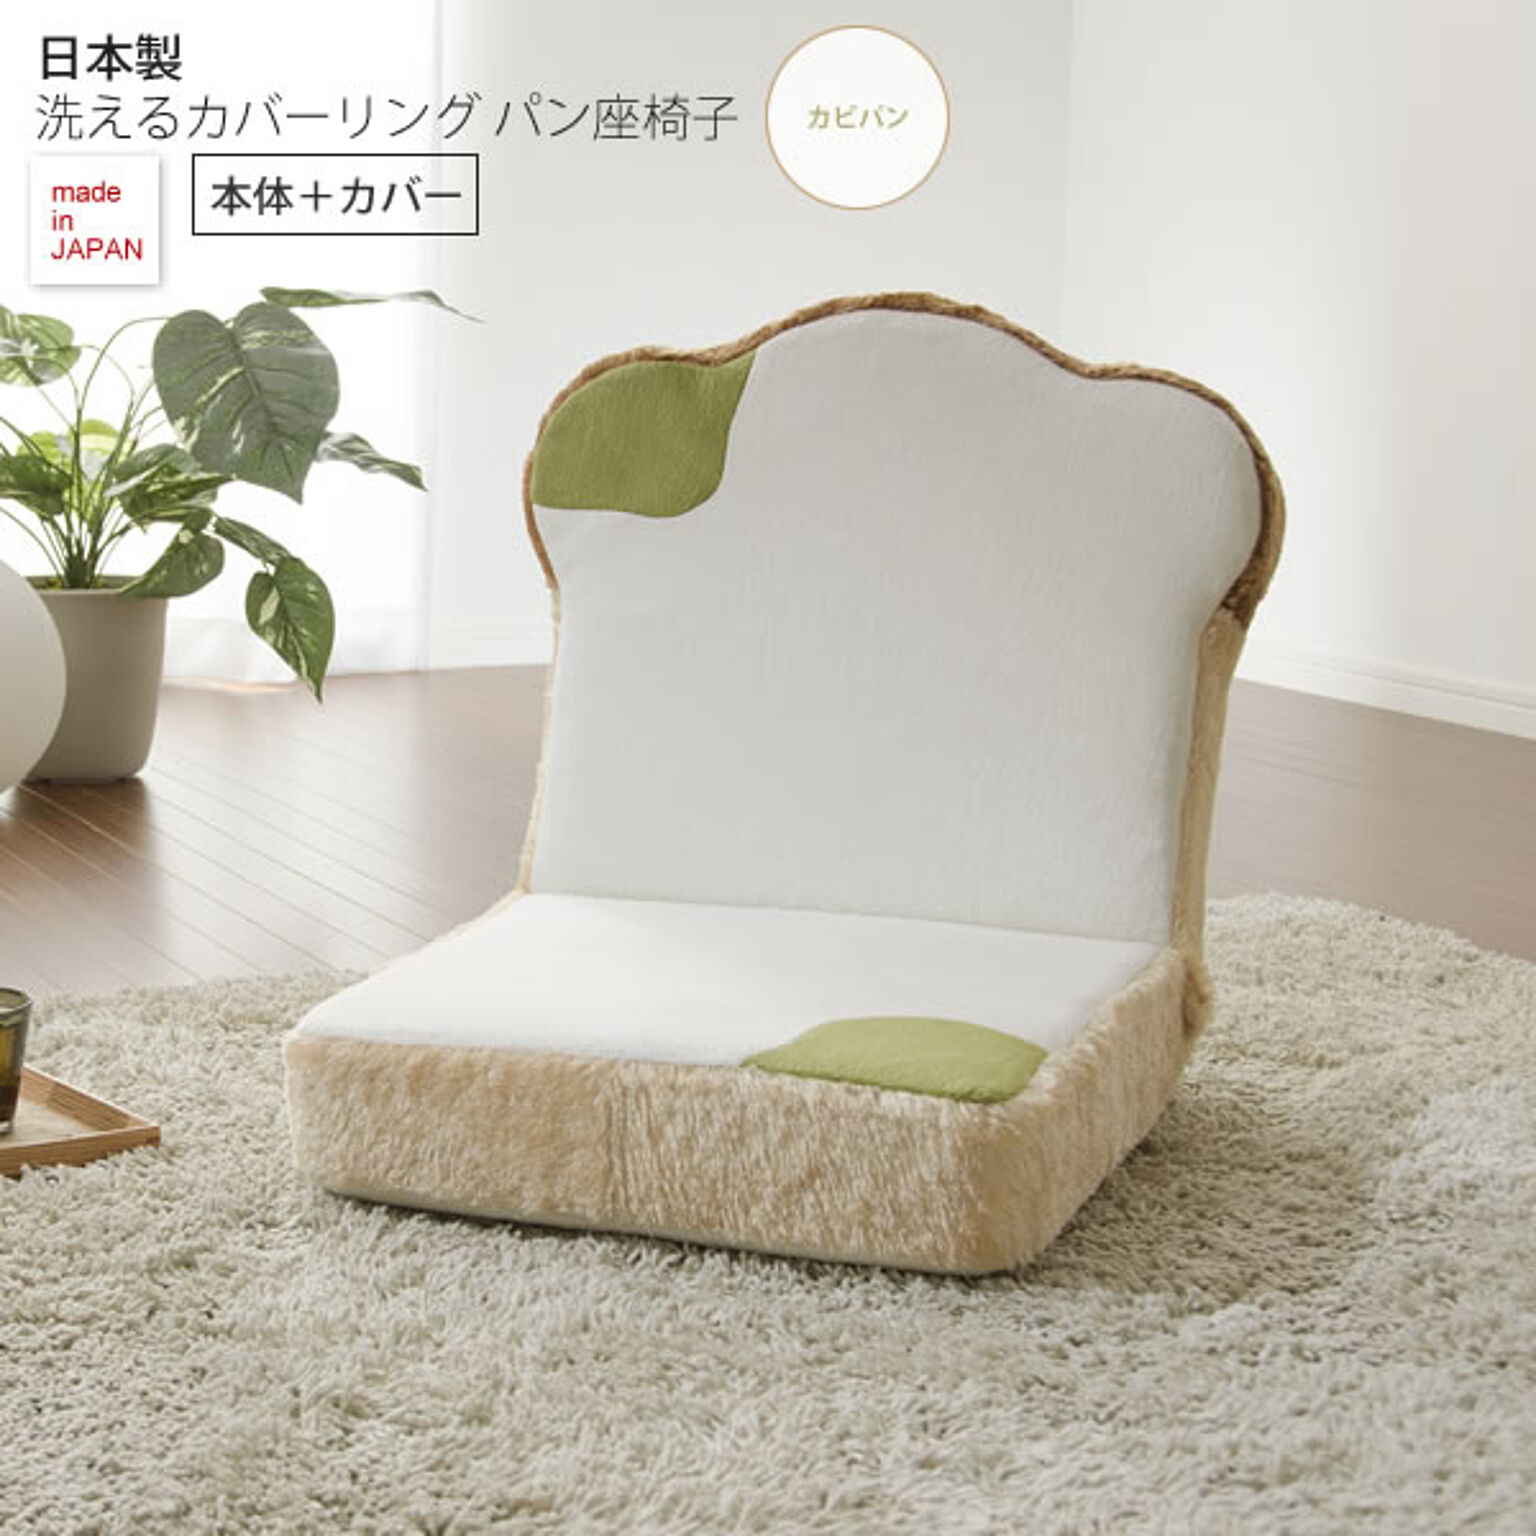 カビパンタイプ ： 日本製洗えるカバーリング パン座椅子（本体＋カバー）【coverpan】 フロアチェアー いす イス 洗濯 ウォッシャブル 布製 ファブリック 